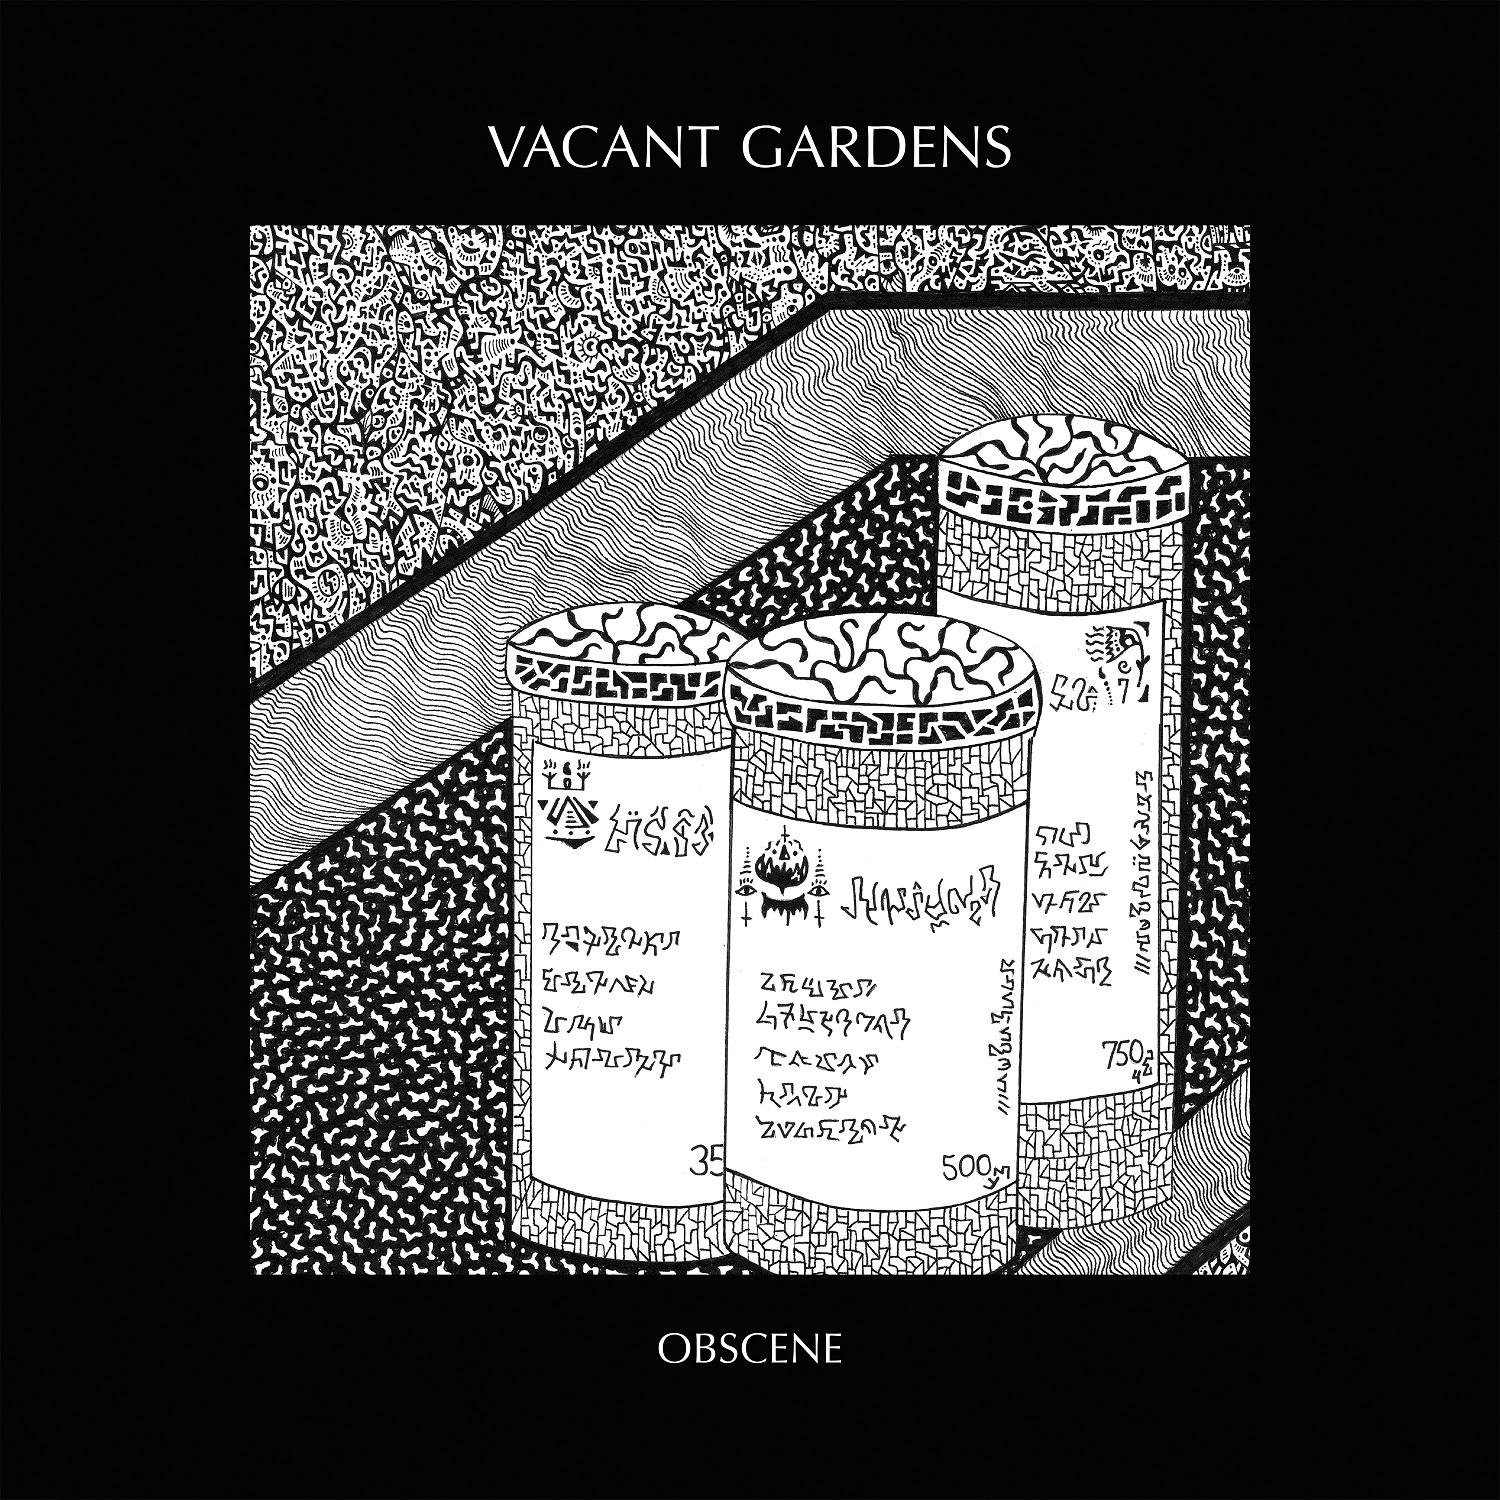 Album artwork for Album artwork for Obscene by Vacant Gardens by Obscene - Vacant Gardens